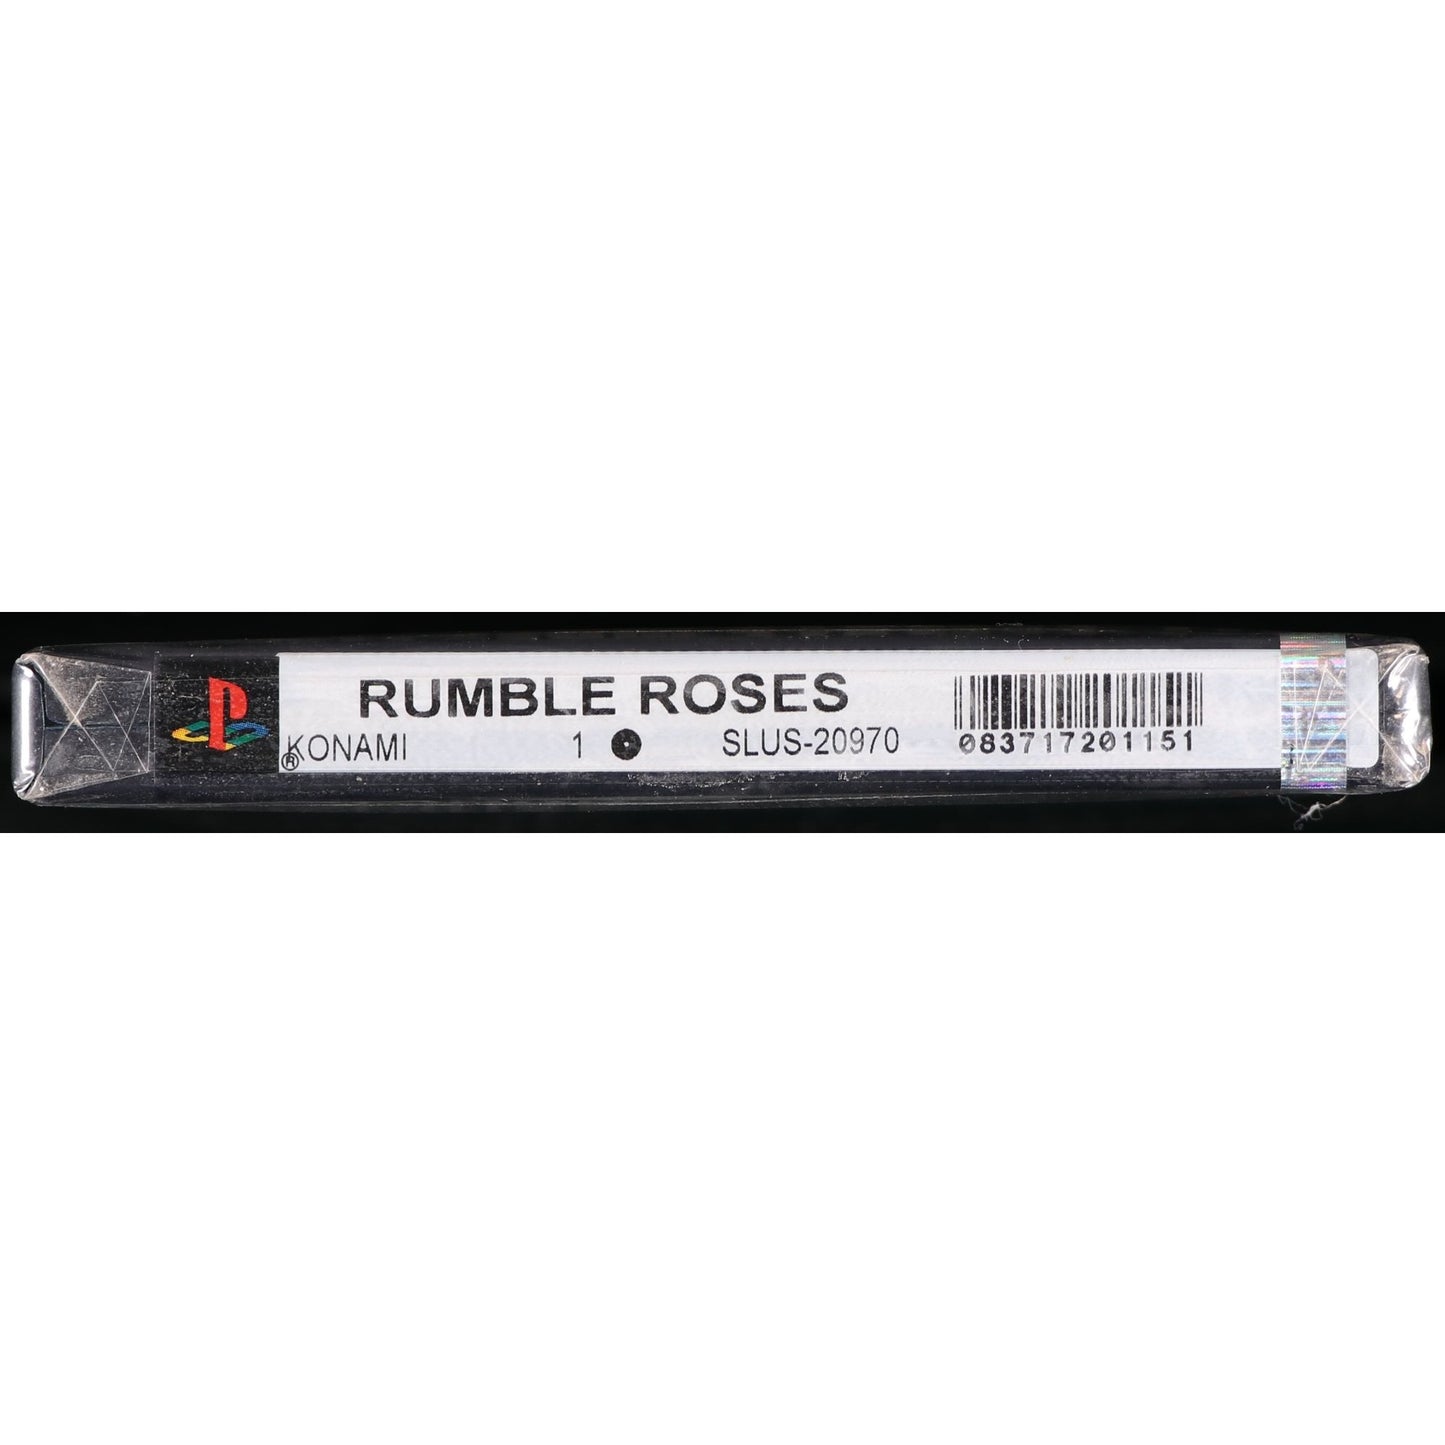 Rumble Roses (2004) PlayStation 2 Konami WATA 9.6 Sealed A+